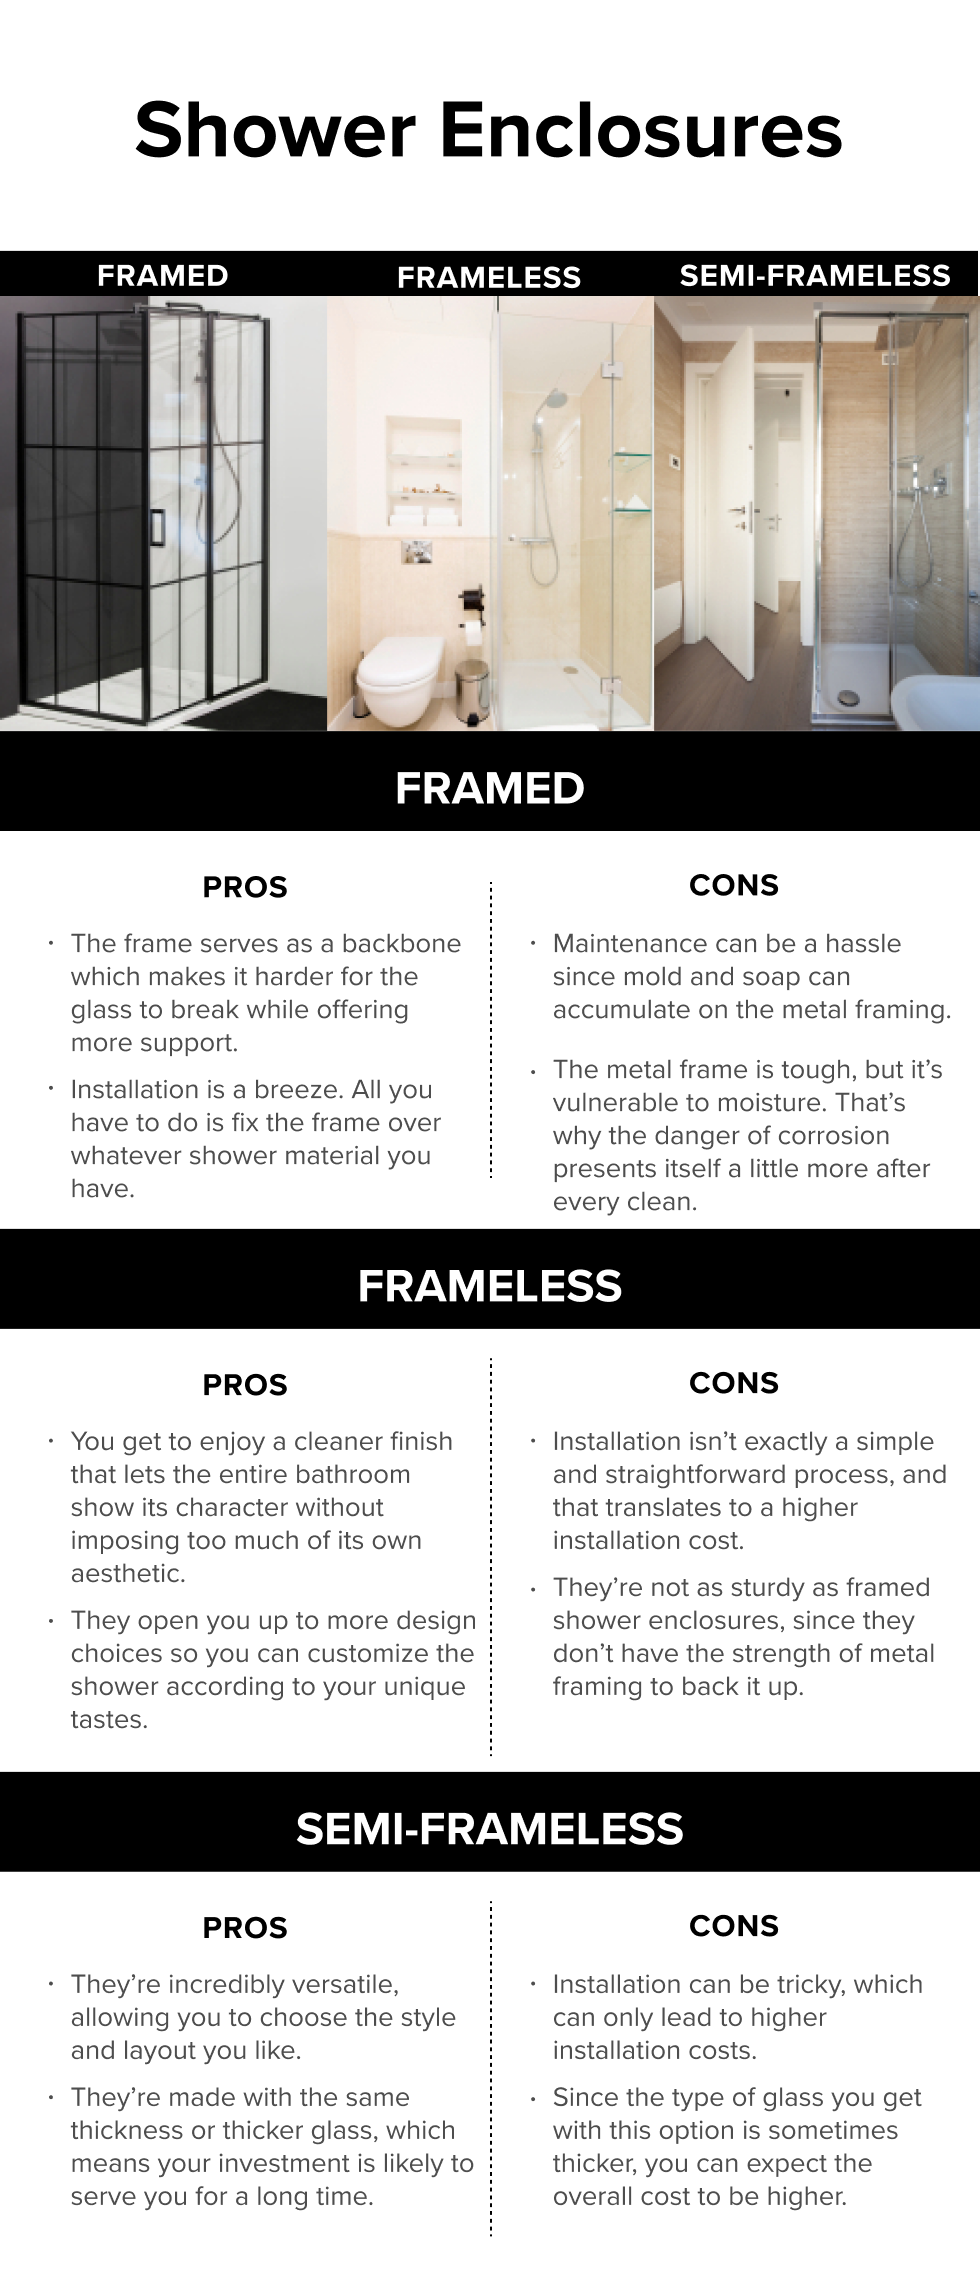 Framed, Semi-Frameless, and Frameless Infographic